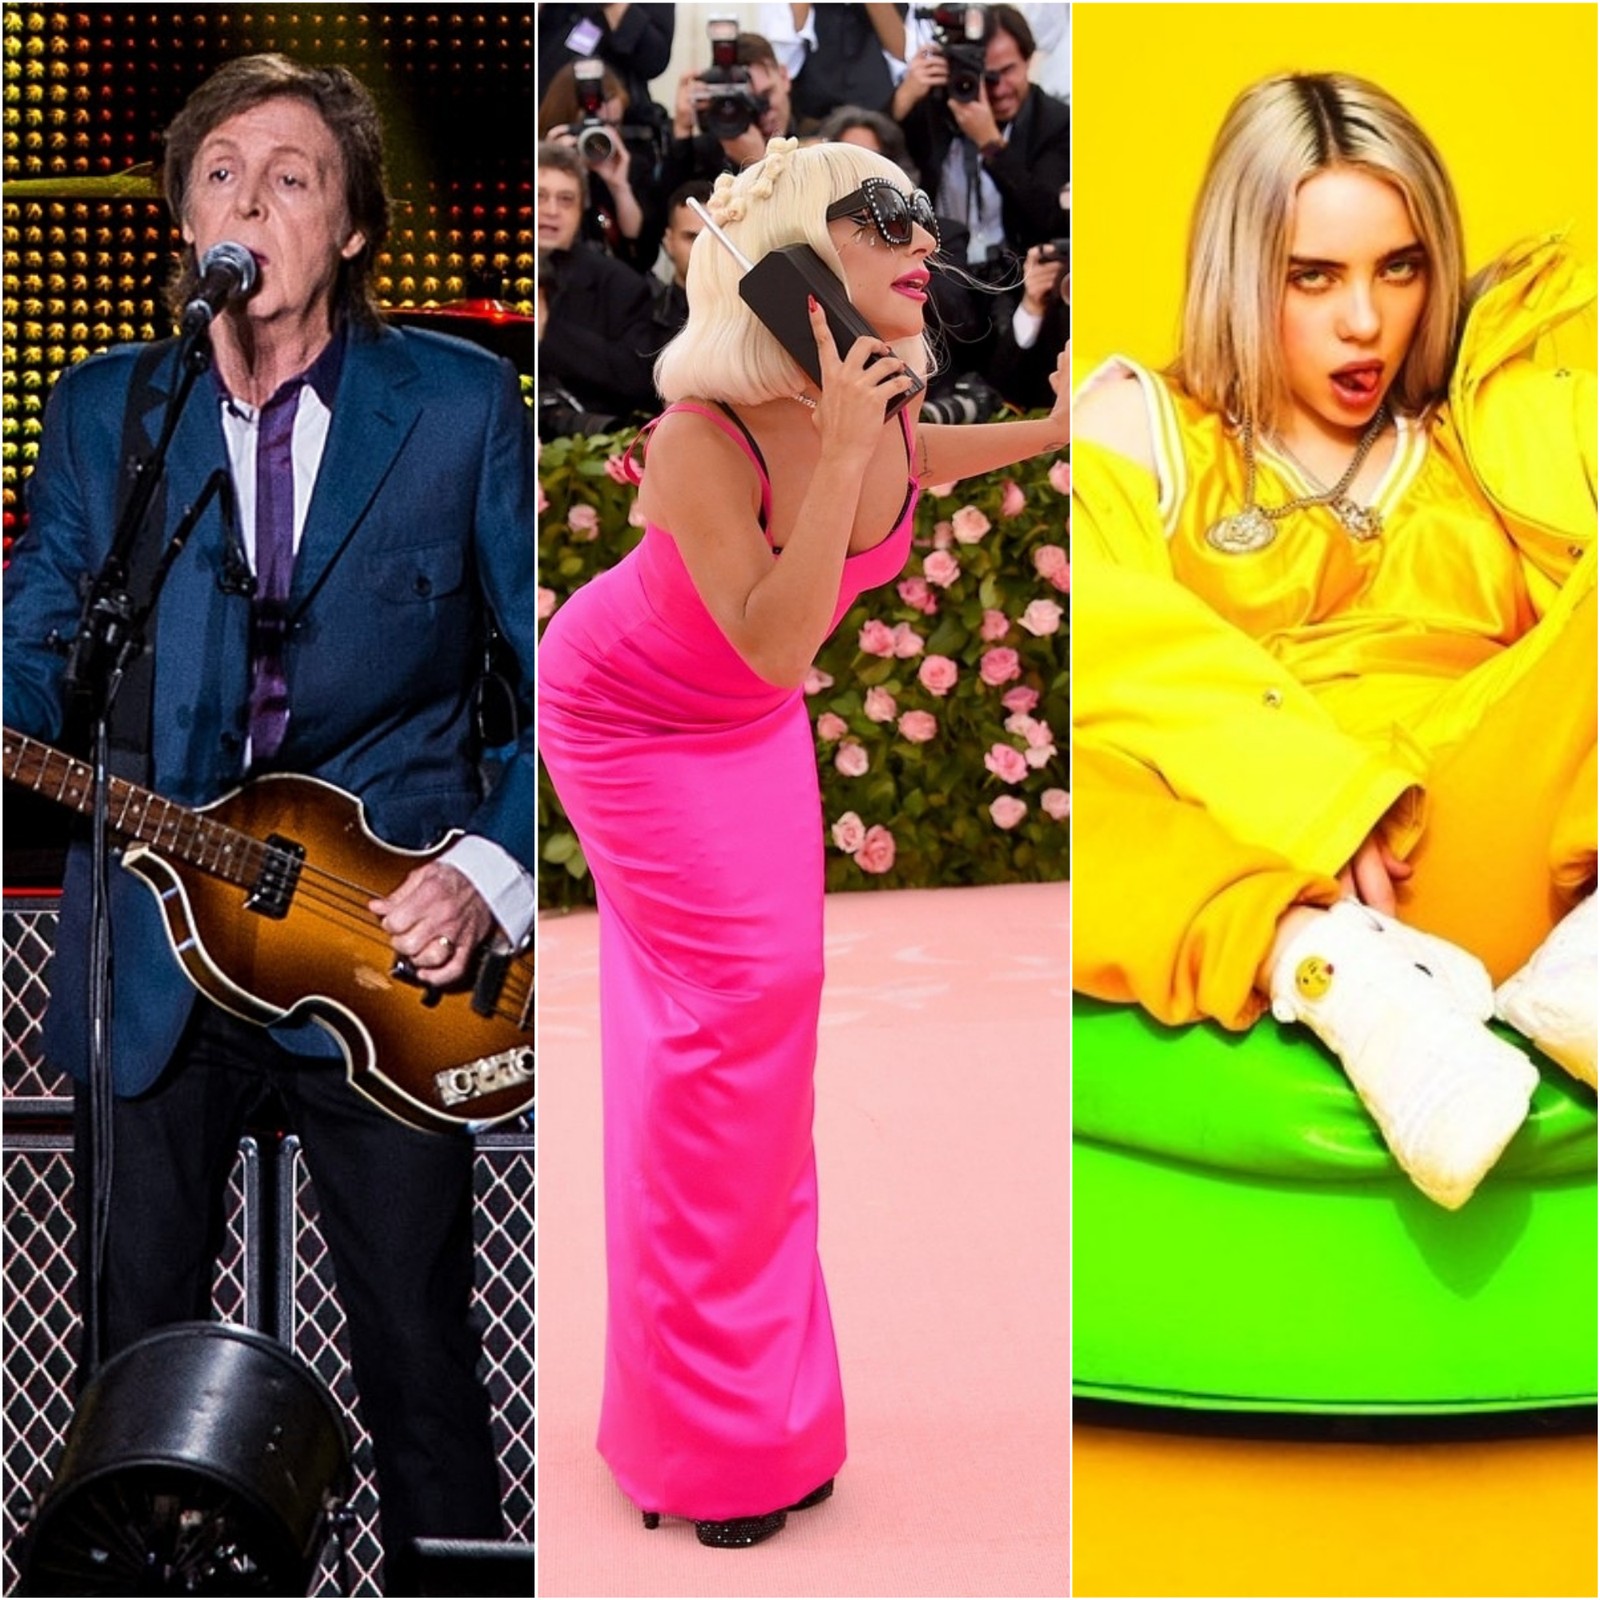 AO VIVO: Rolling Stones, Lady Gaga, Paul McCartney, Elton John e outros; assista